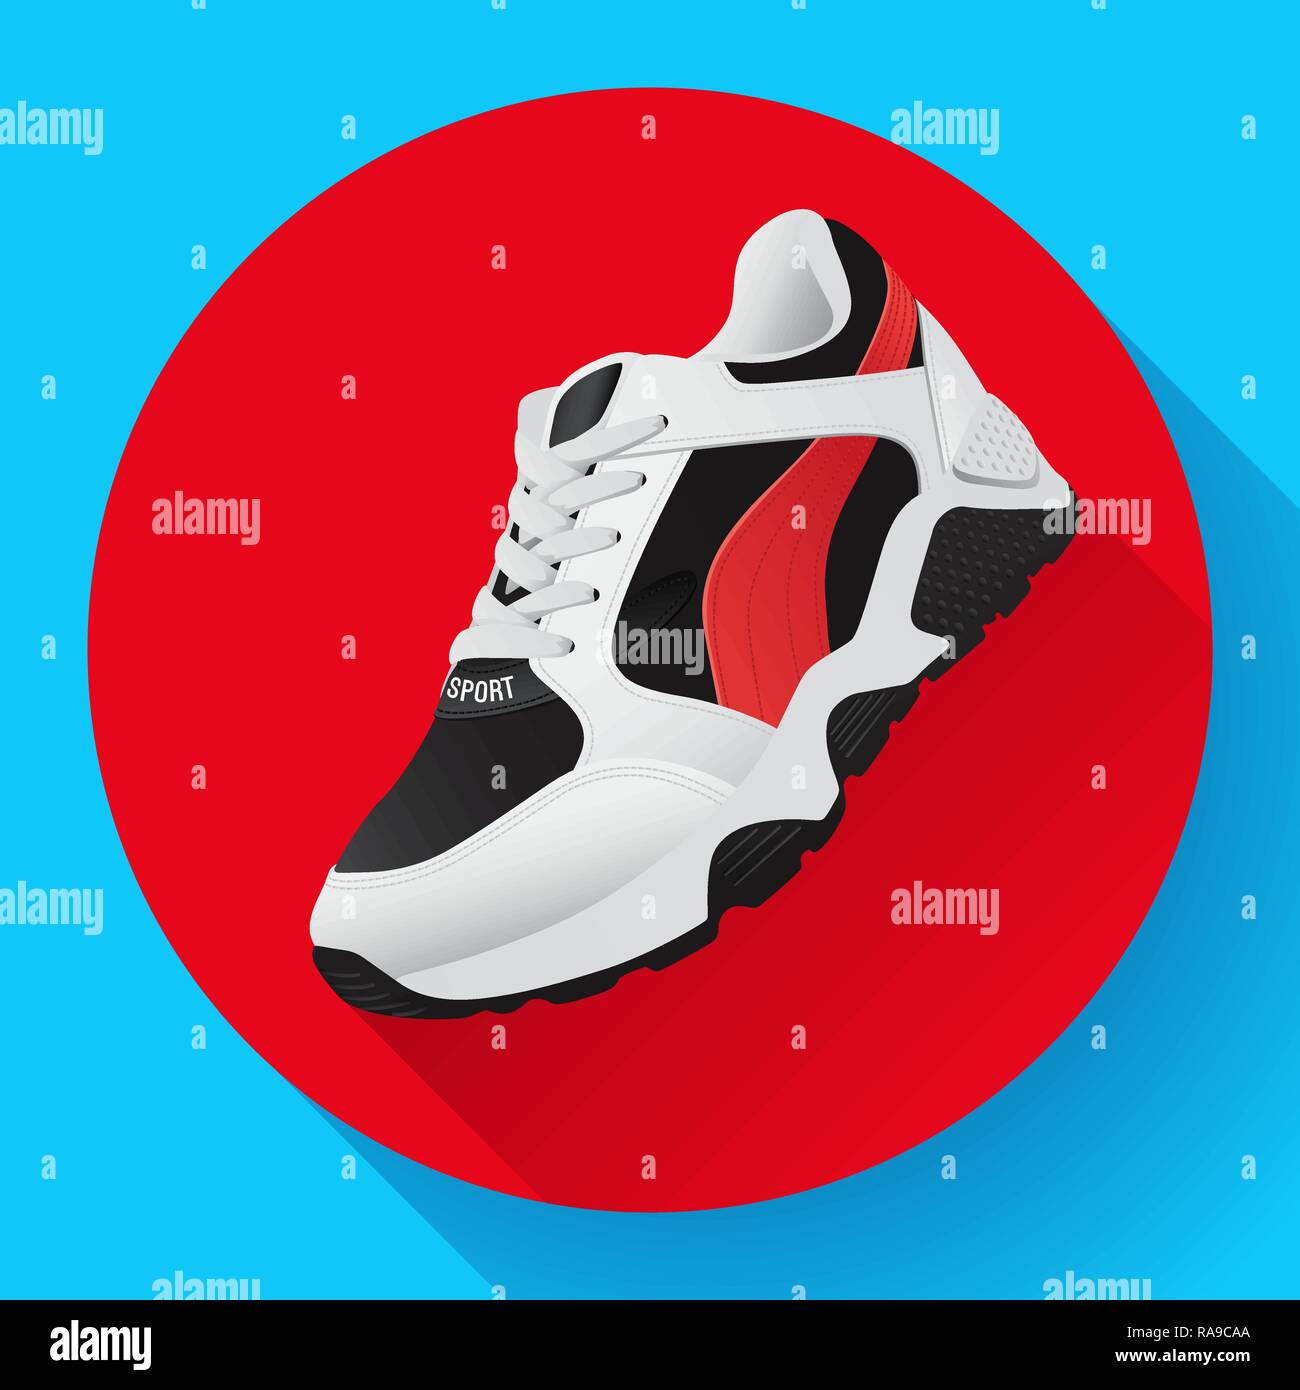 Fitness scarpe da ginnastica per la formazione running shoe design piatto con lunga ombra Illustrazione Vettoriale